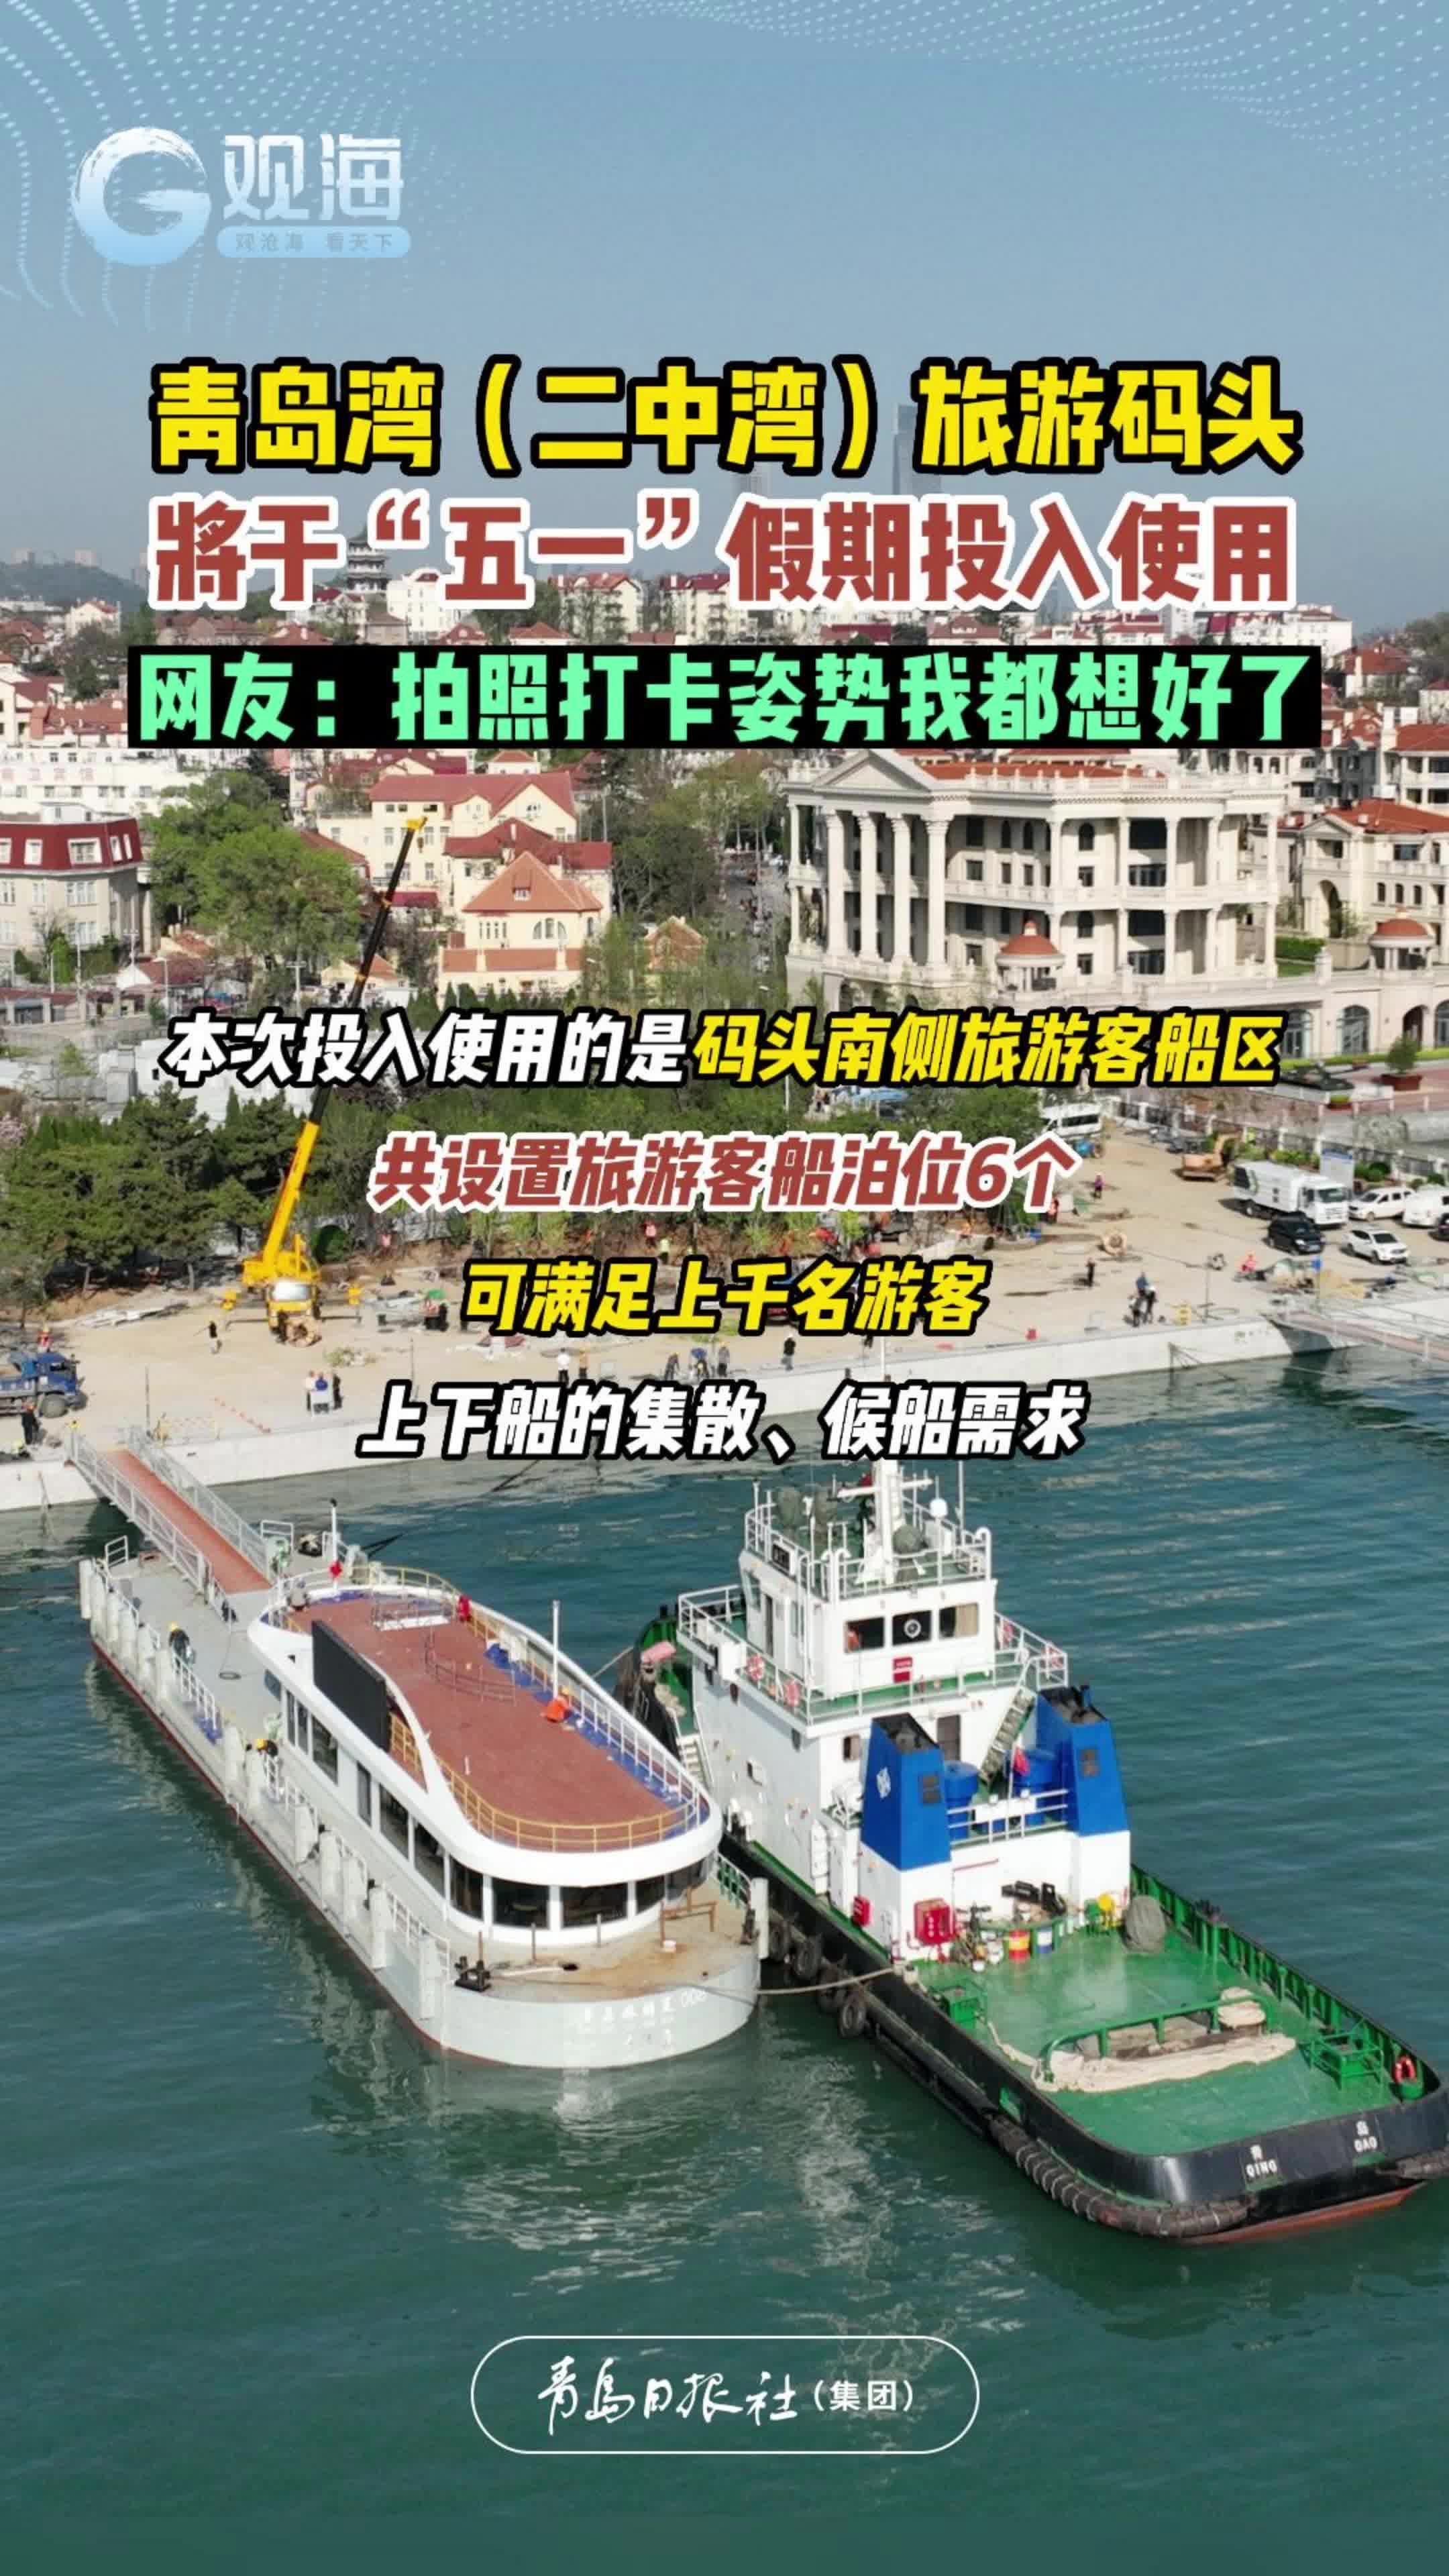 青岛湾（二中湾）旅游码头将于“五一”假期投入使用